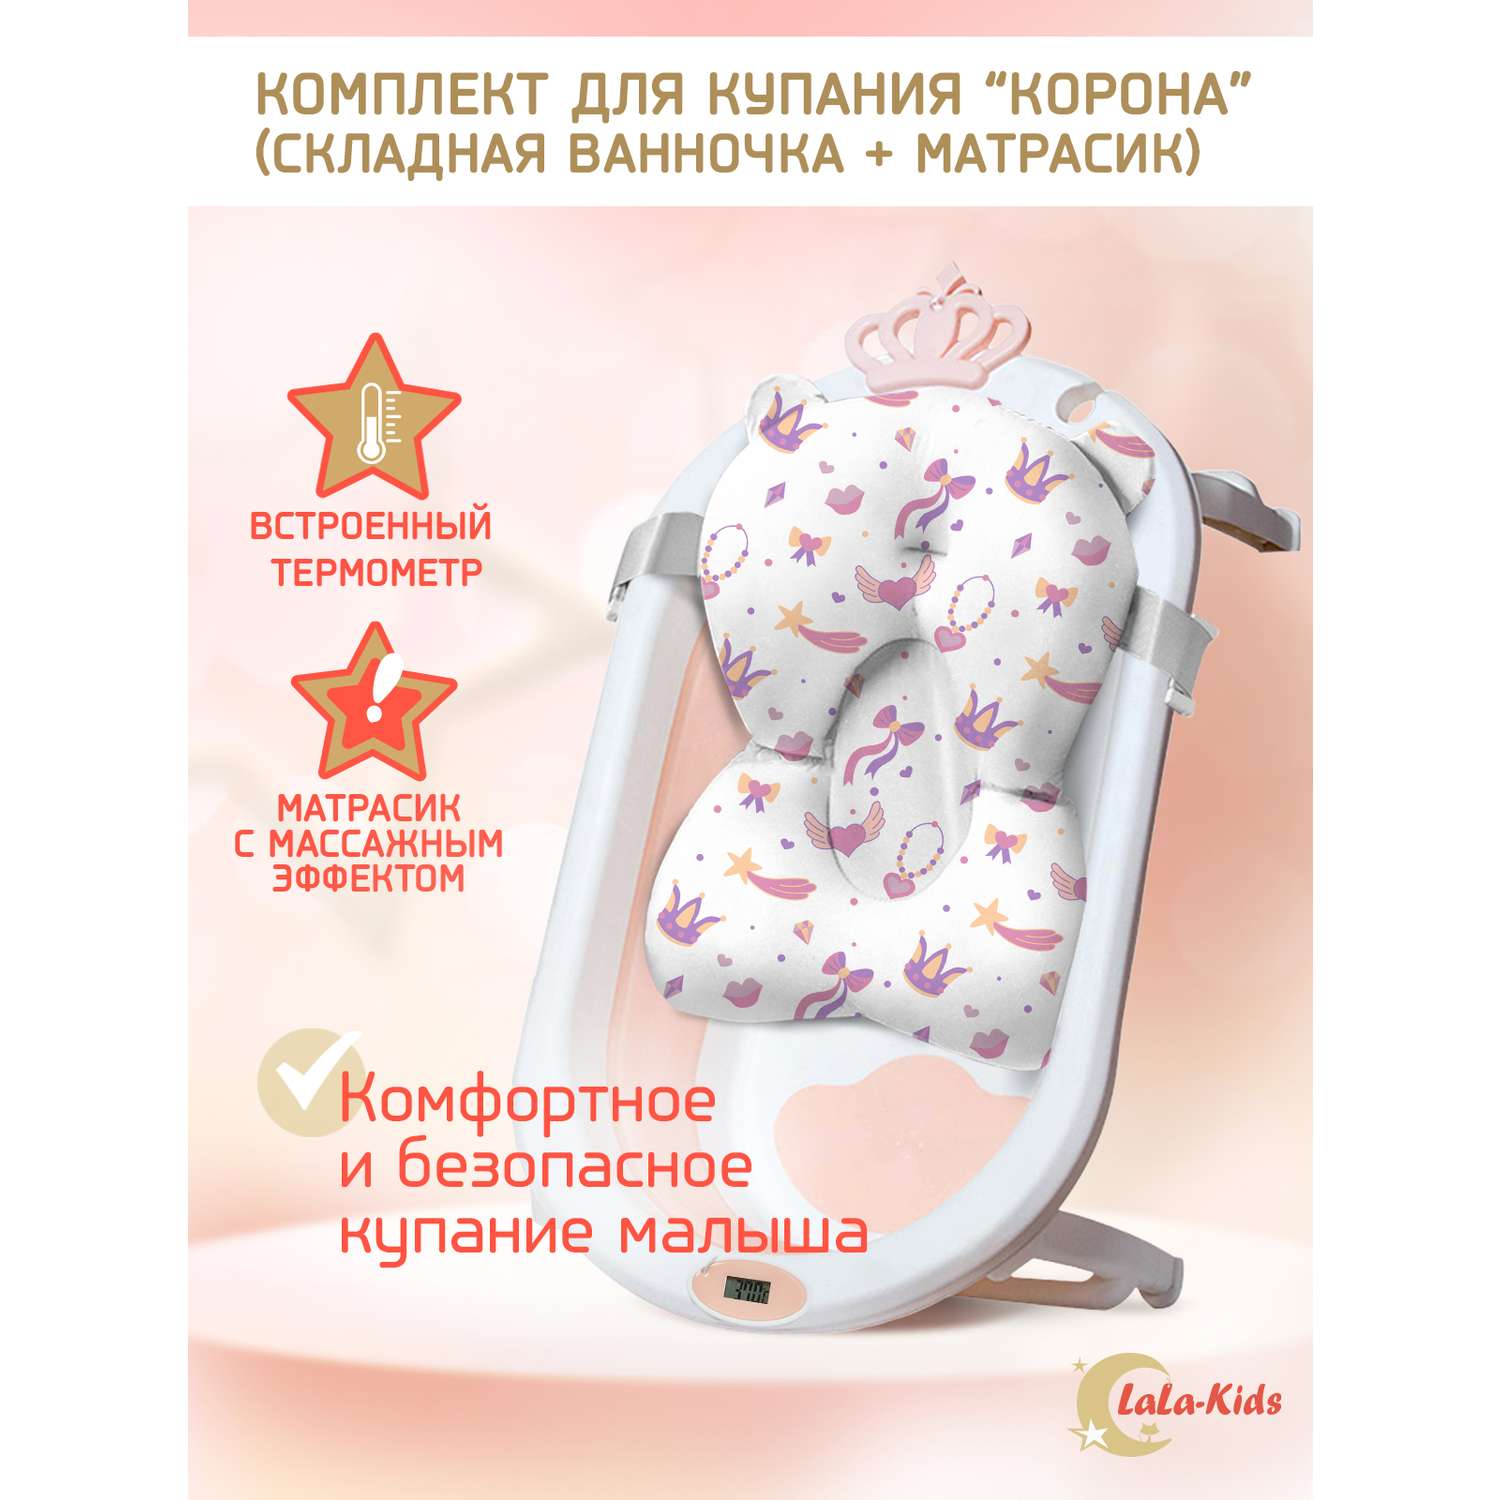 Ванночка для новорожденных LaLa-Kids складная с матрасиком и термометром в комплекте - фото 1